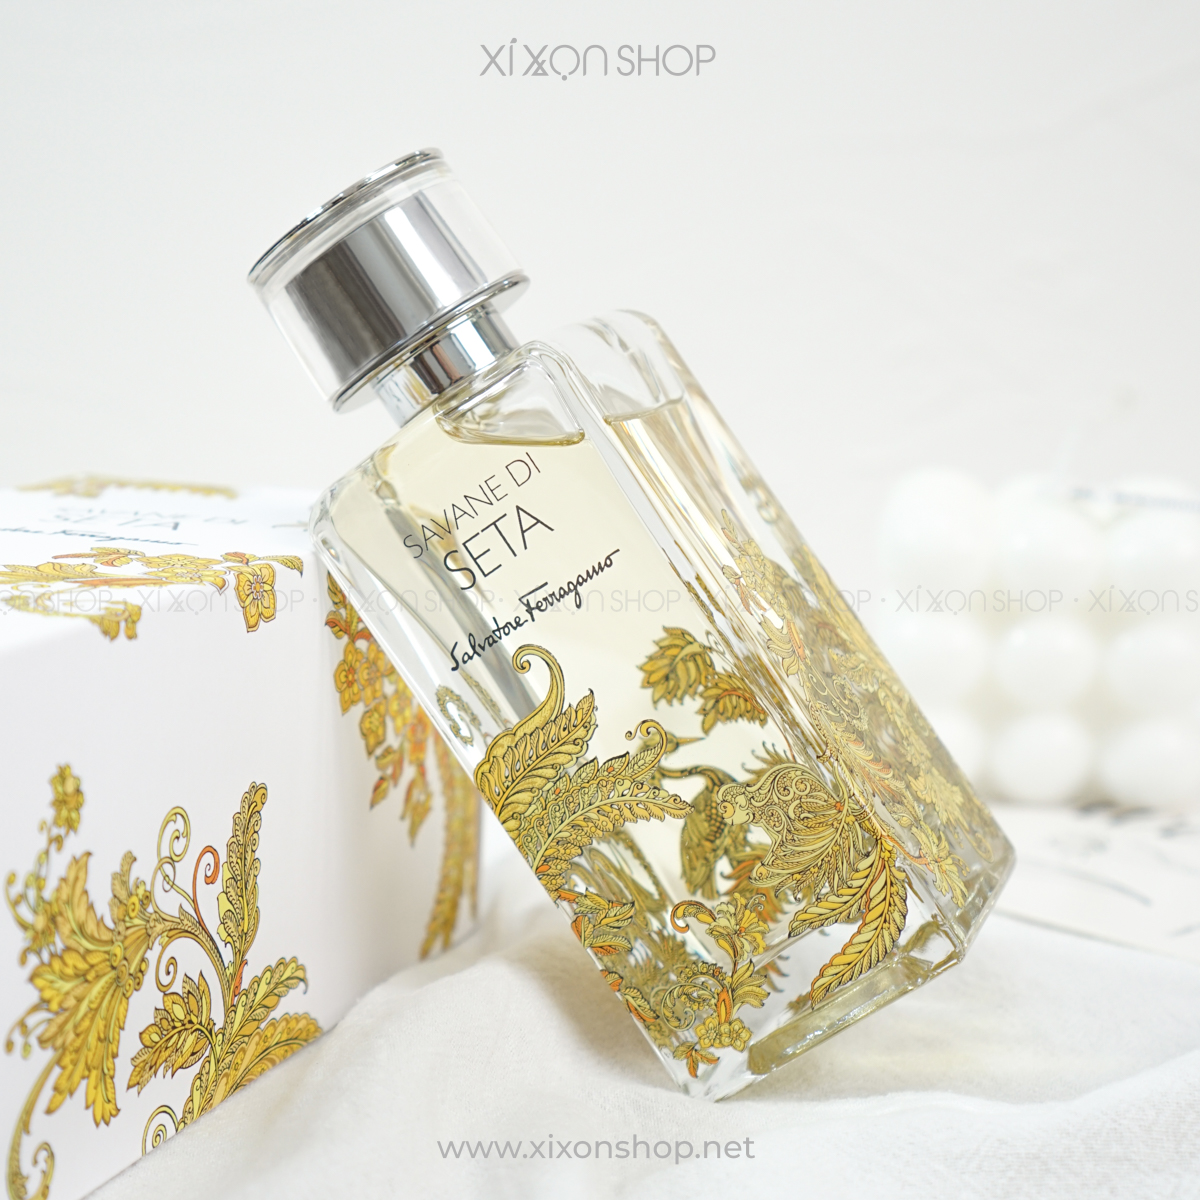 Xixon Savane Nước Seta unisex hoa Ferragamo Salvatore Di | Perfume